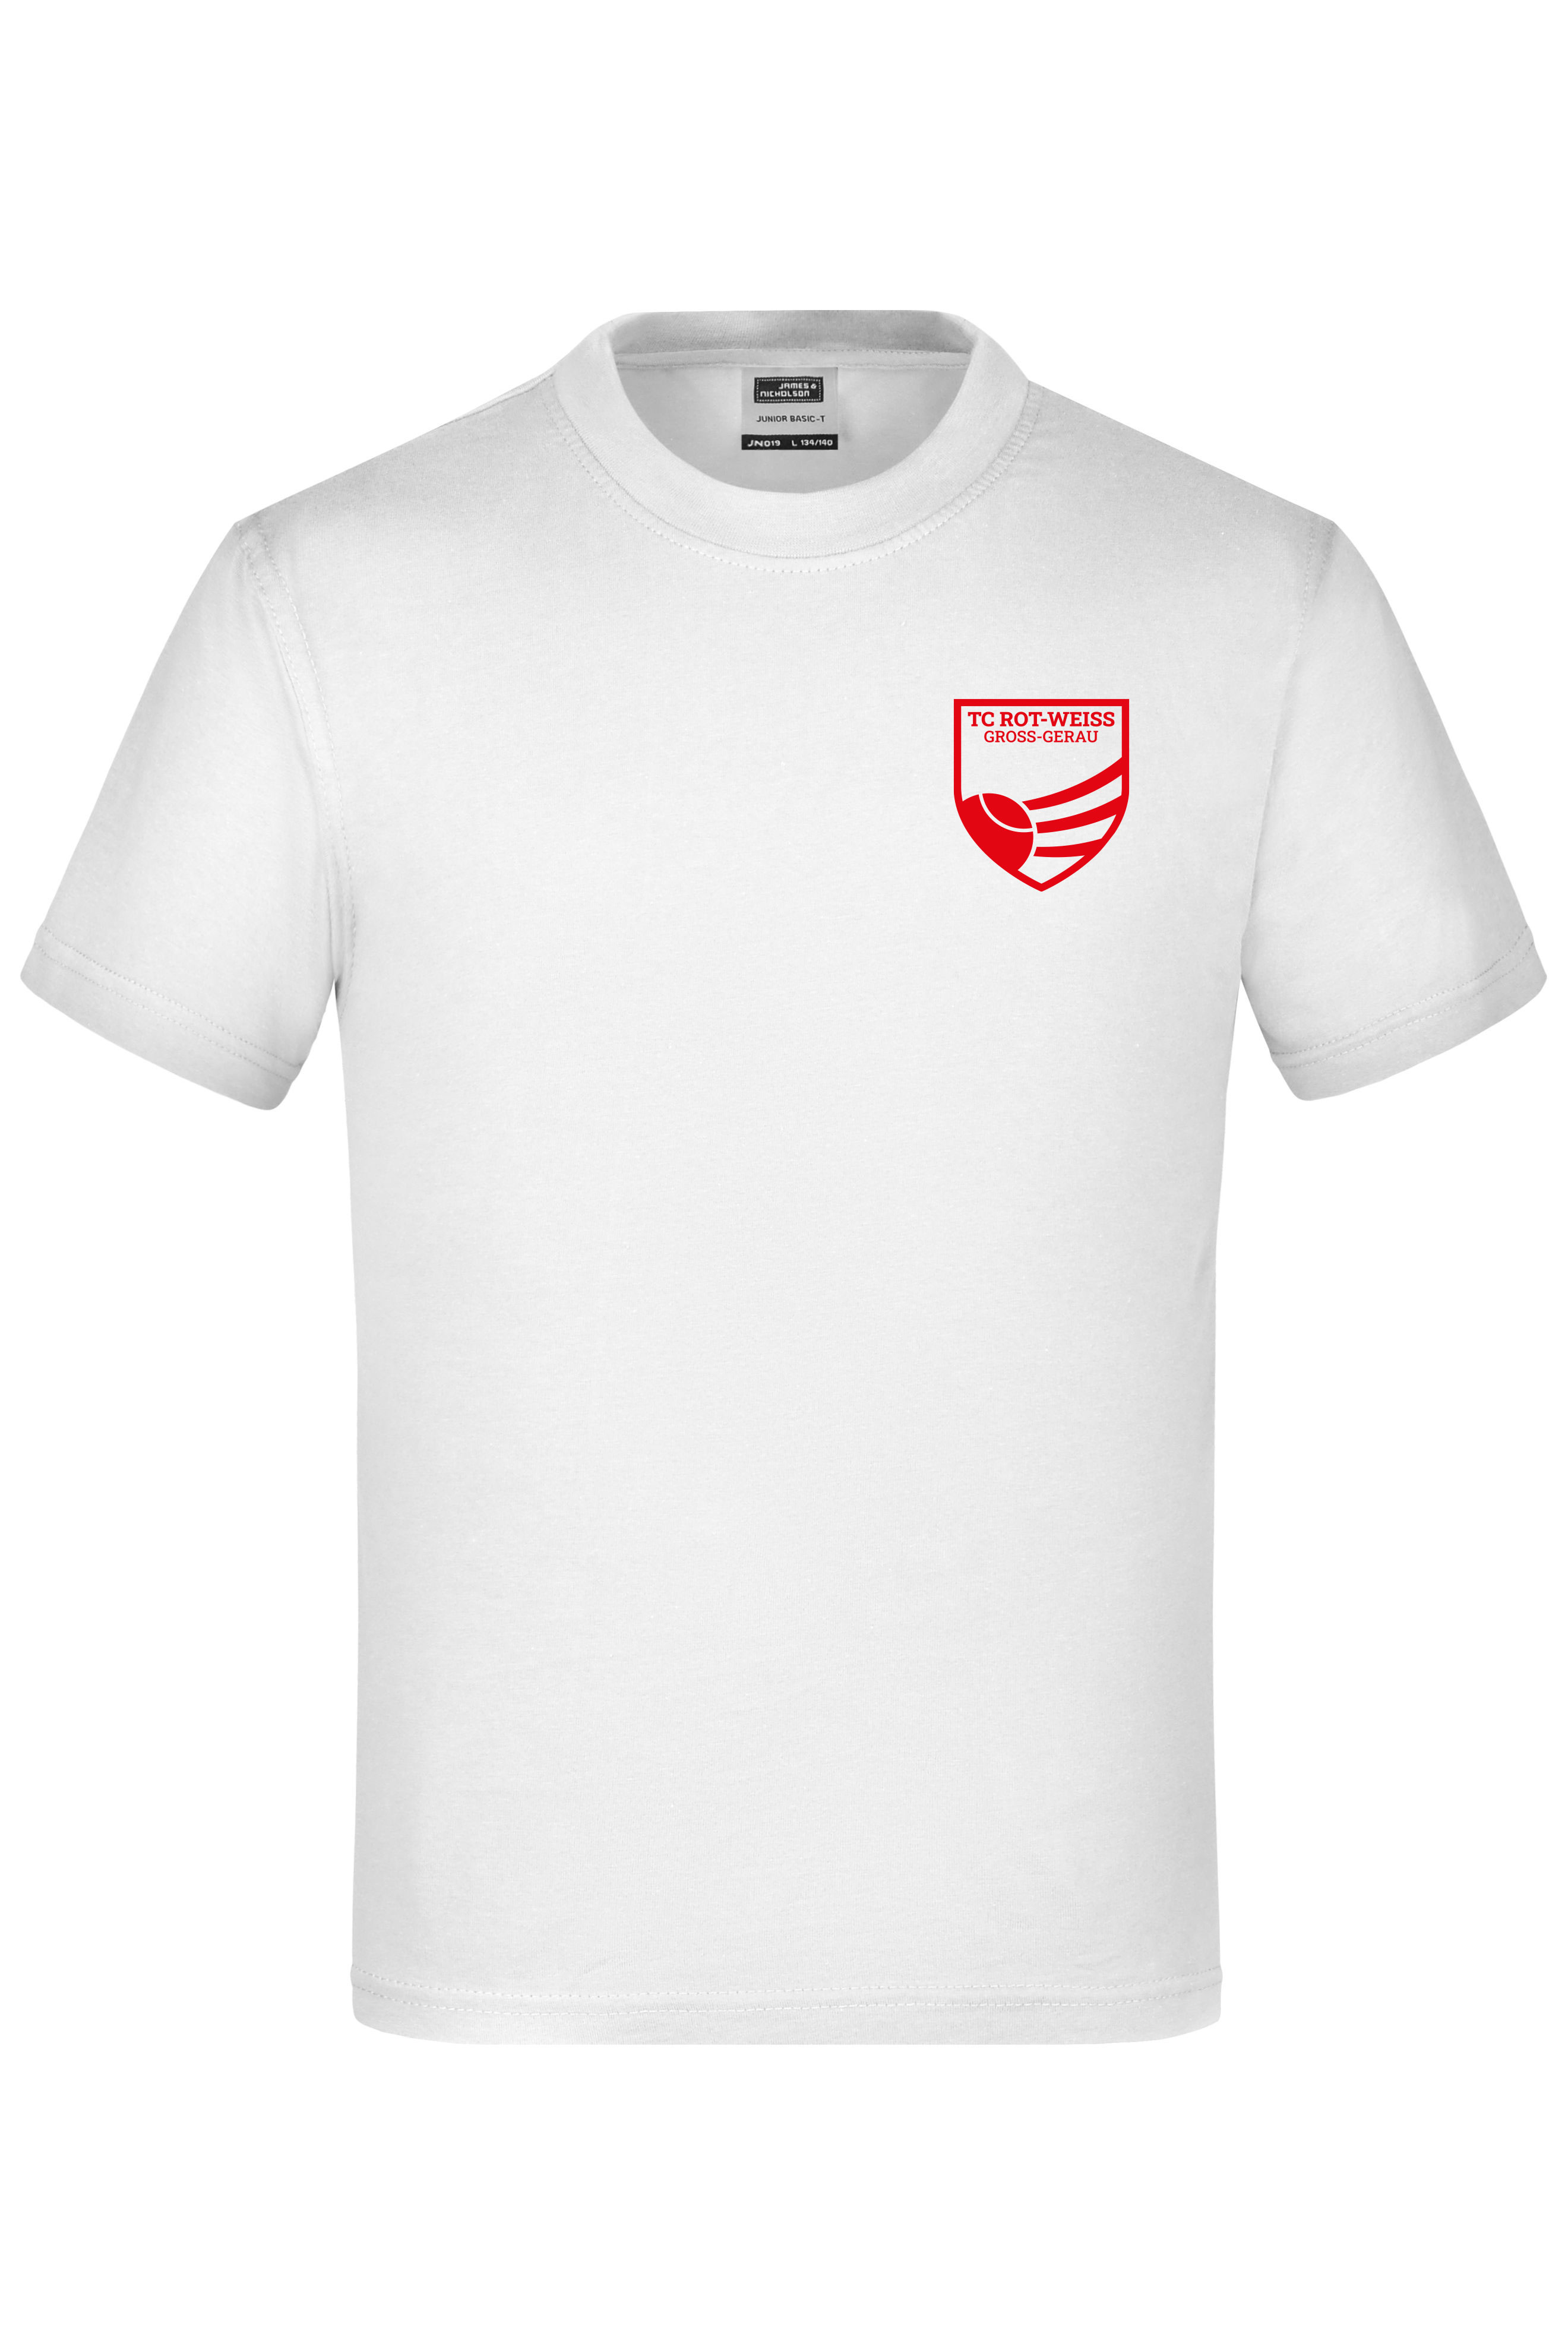 TC Rot-Weiss - Vorteil Dein Name - Kinder T-Shirt weiss